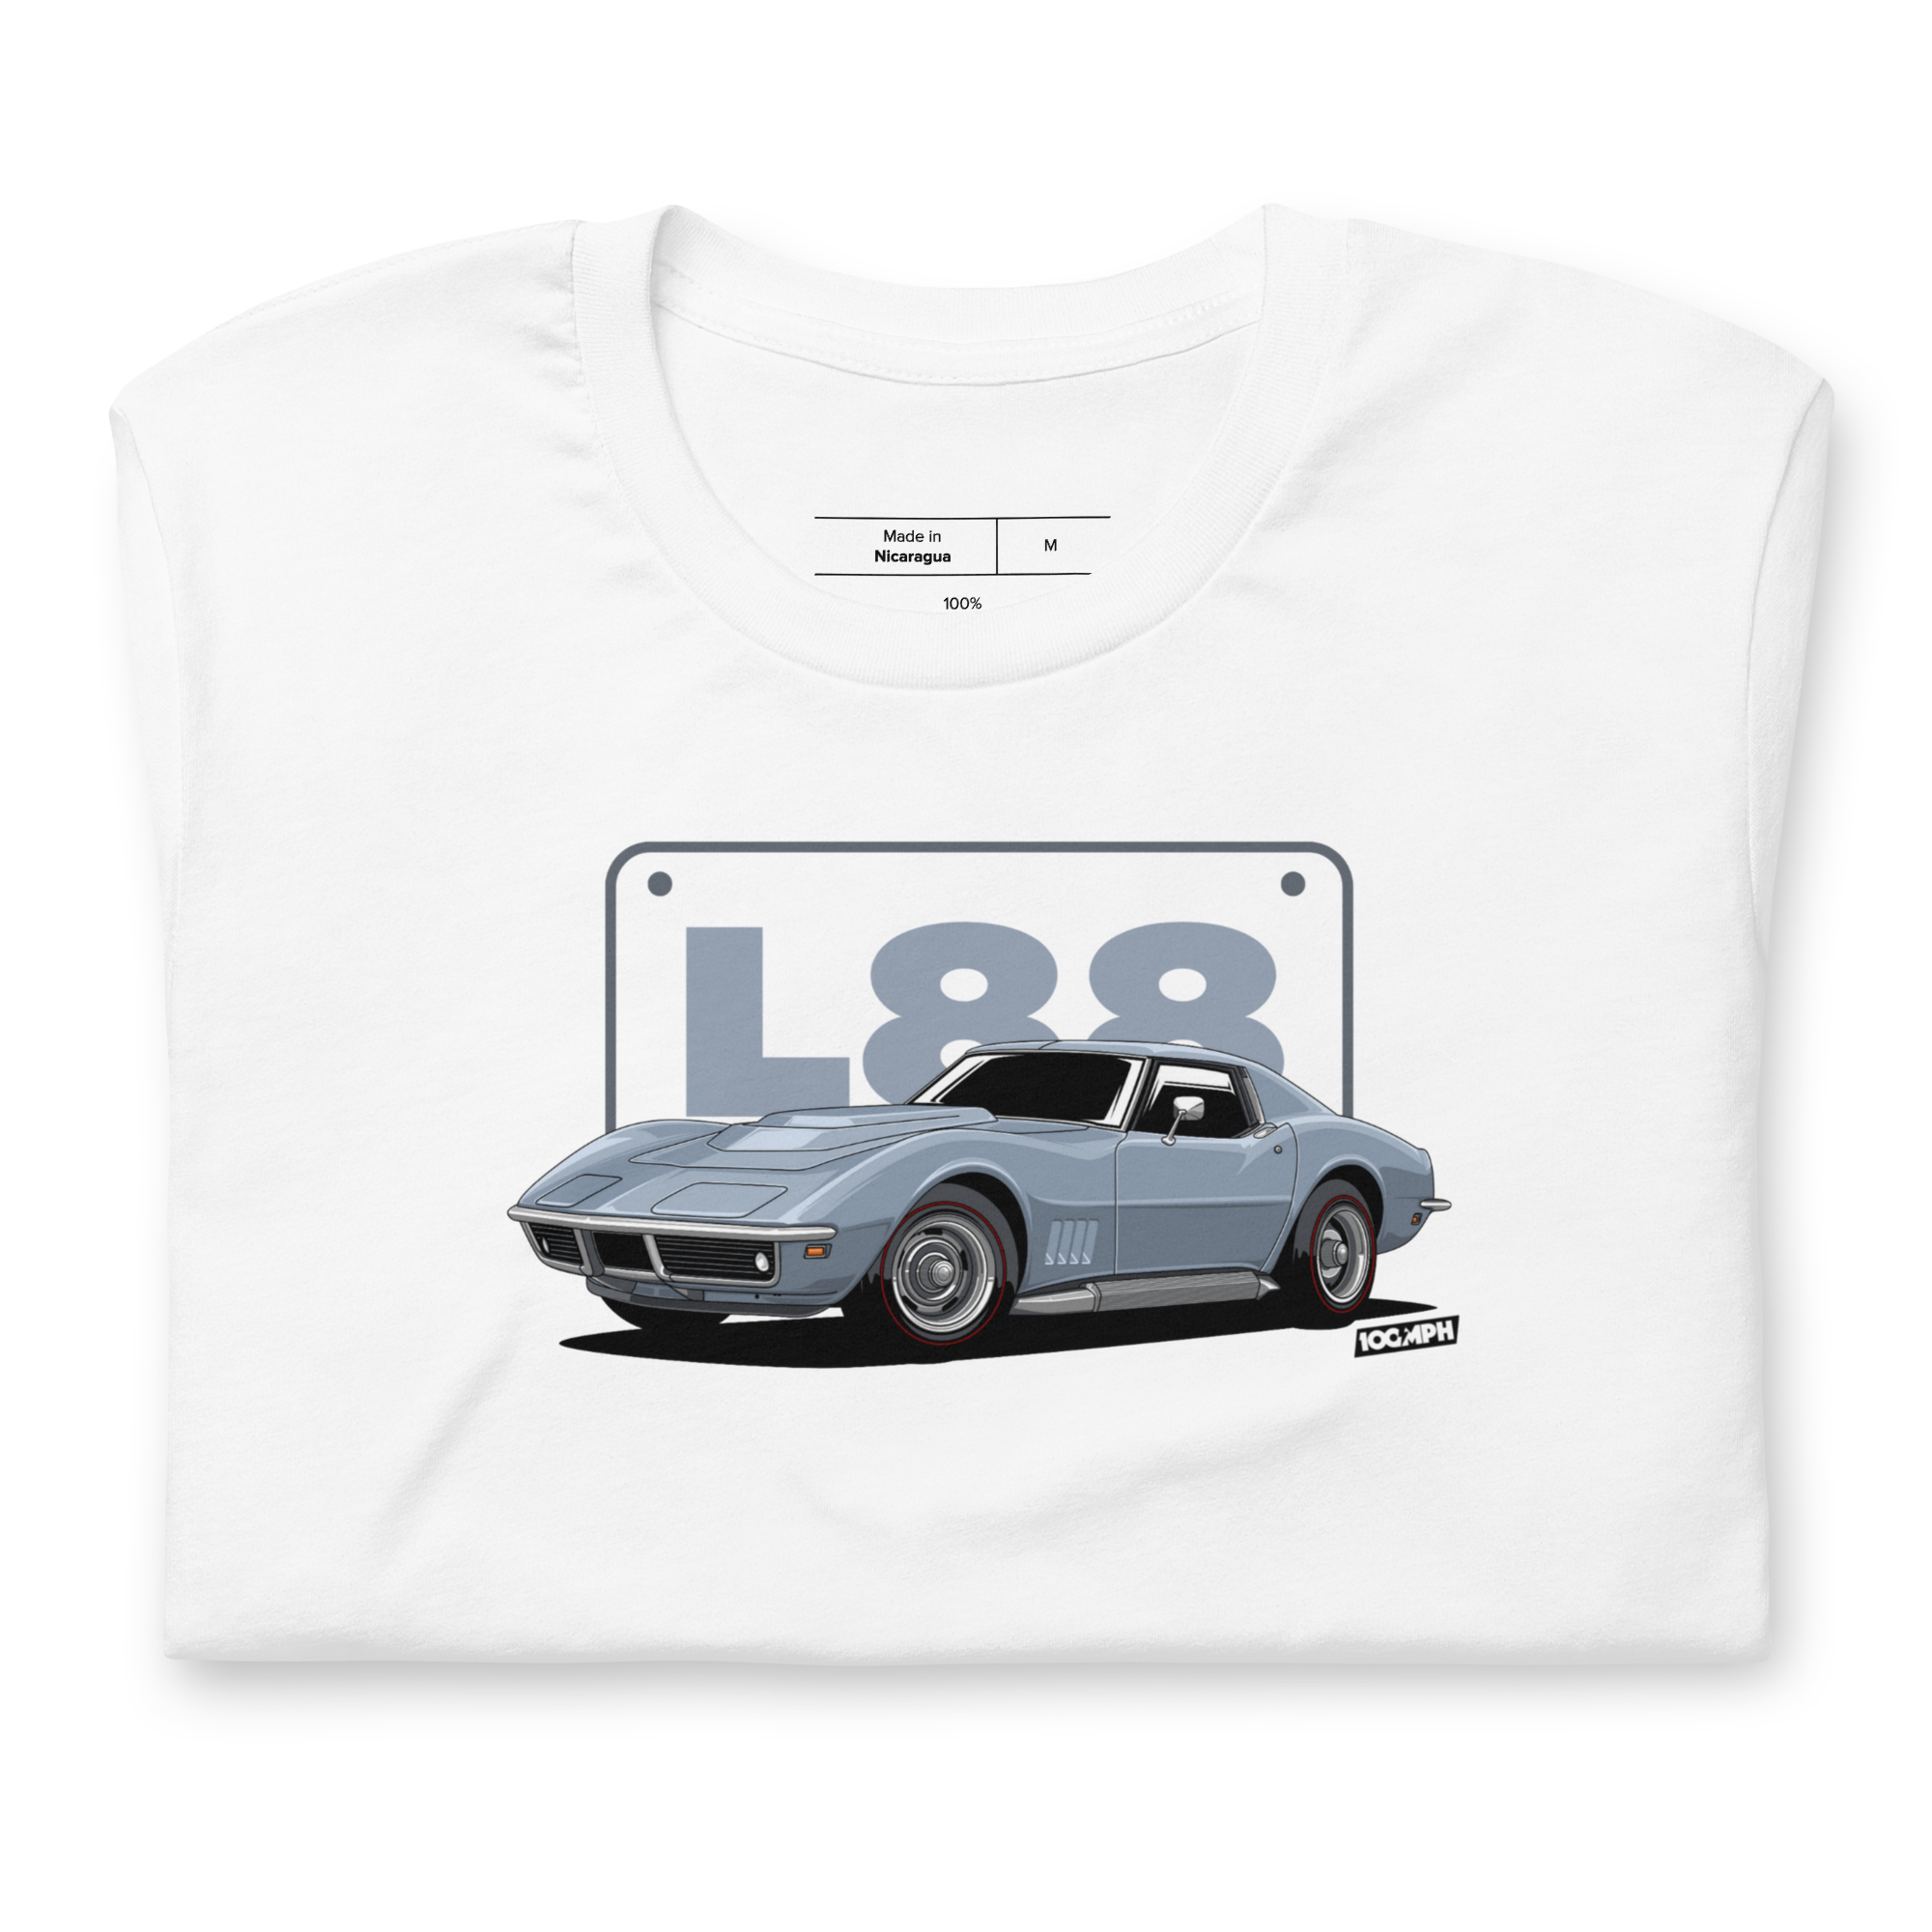 L88 Corvette